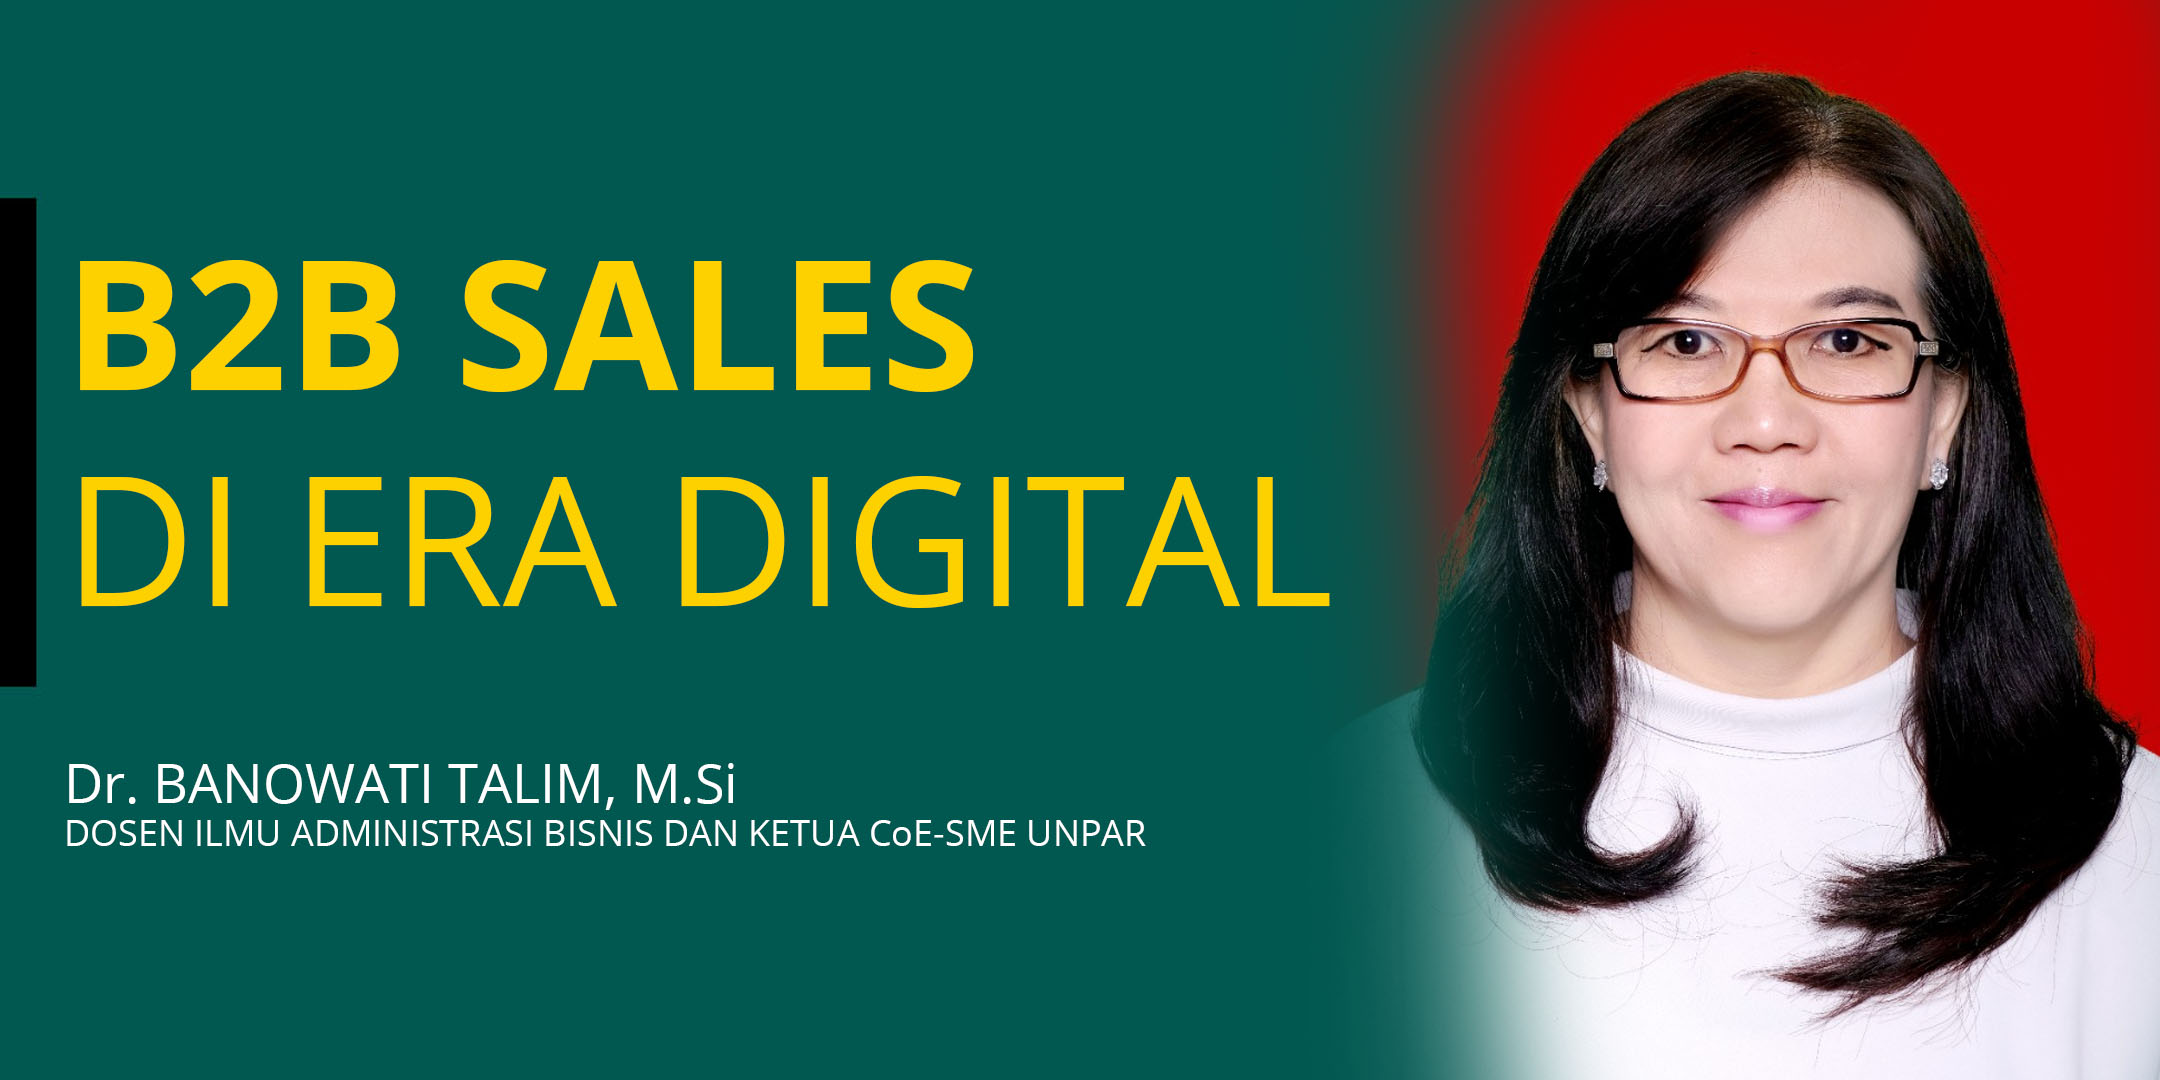 B2B Sales di Era Digital